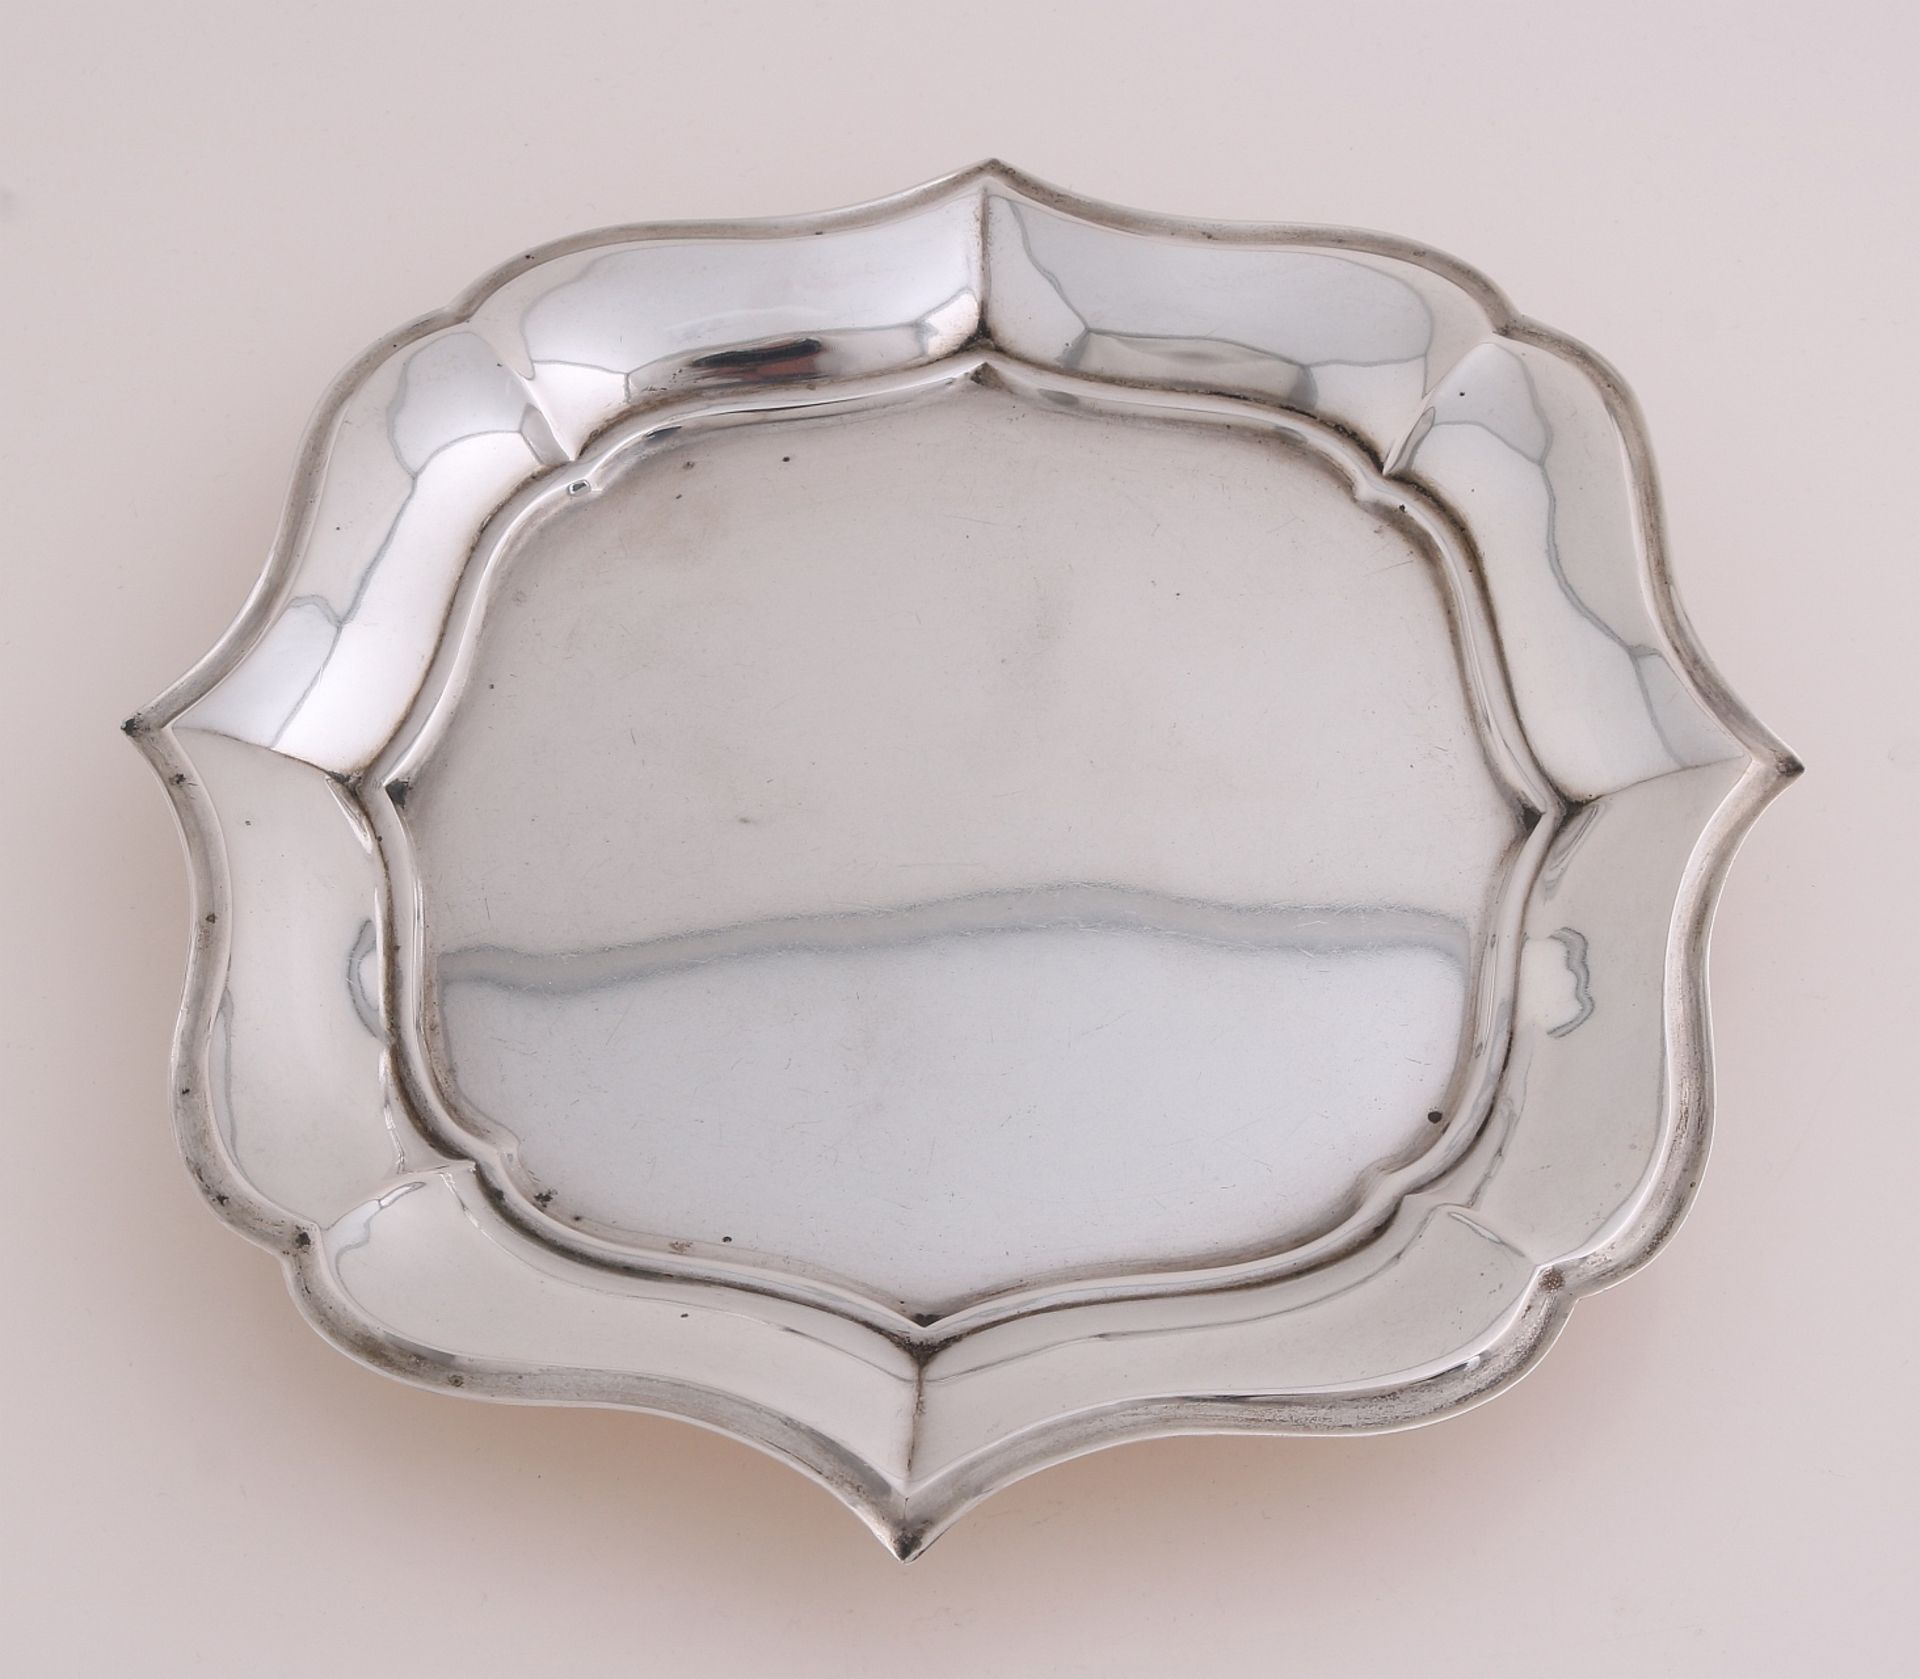 Silver cabaret bowl